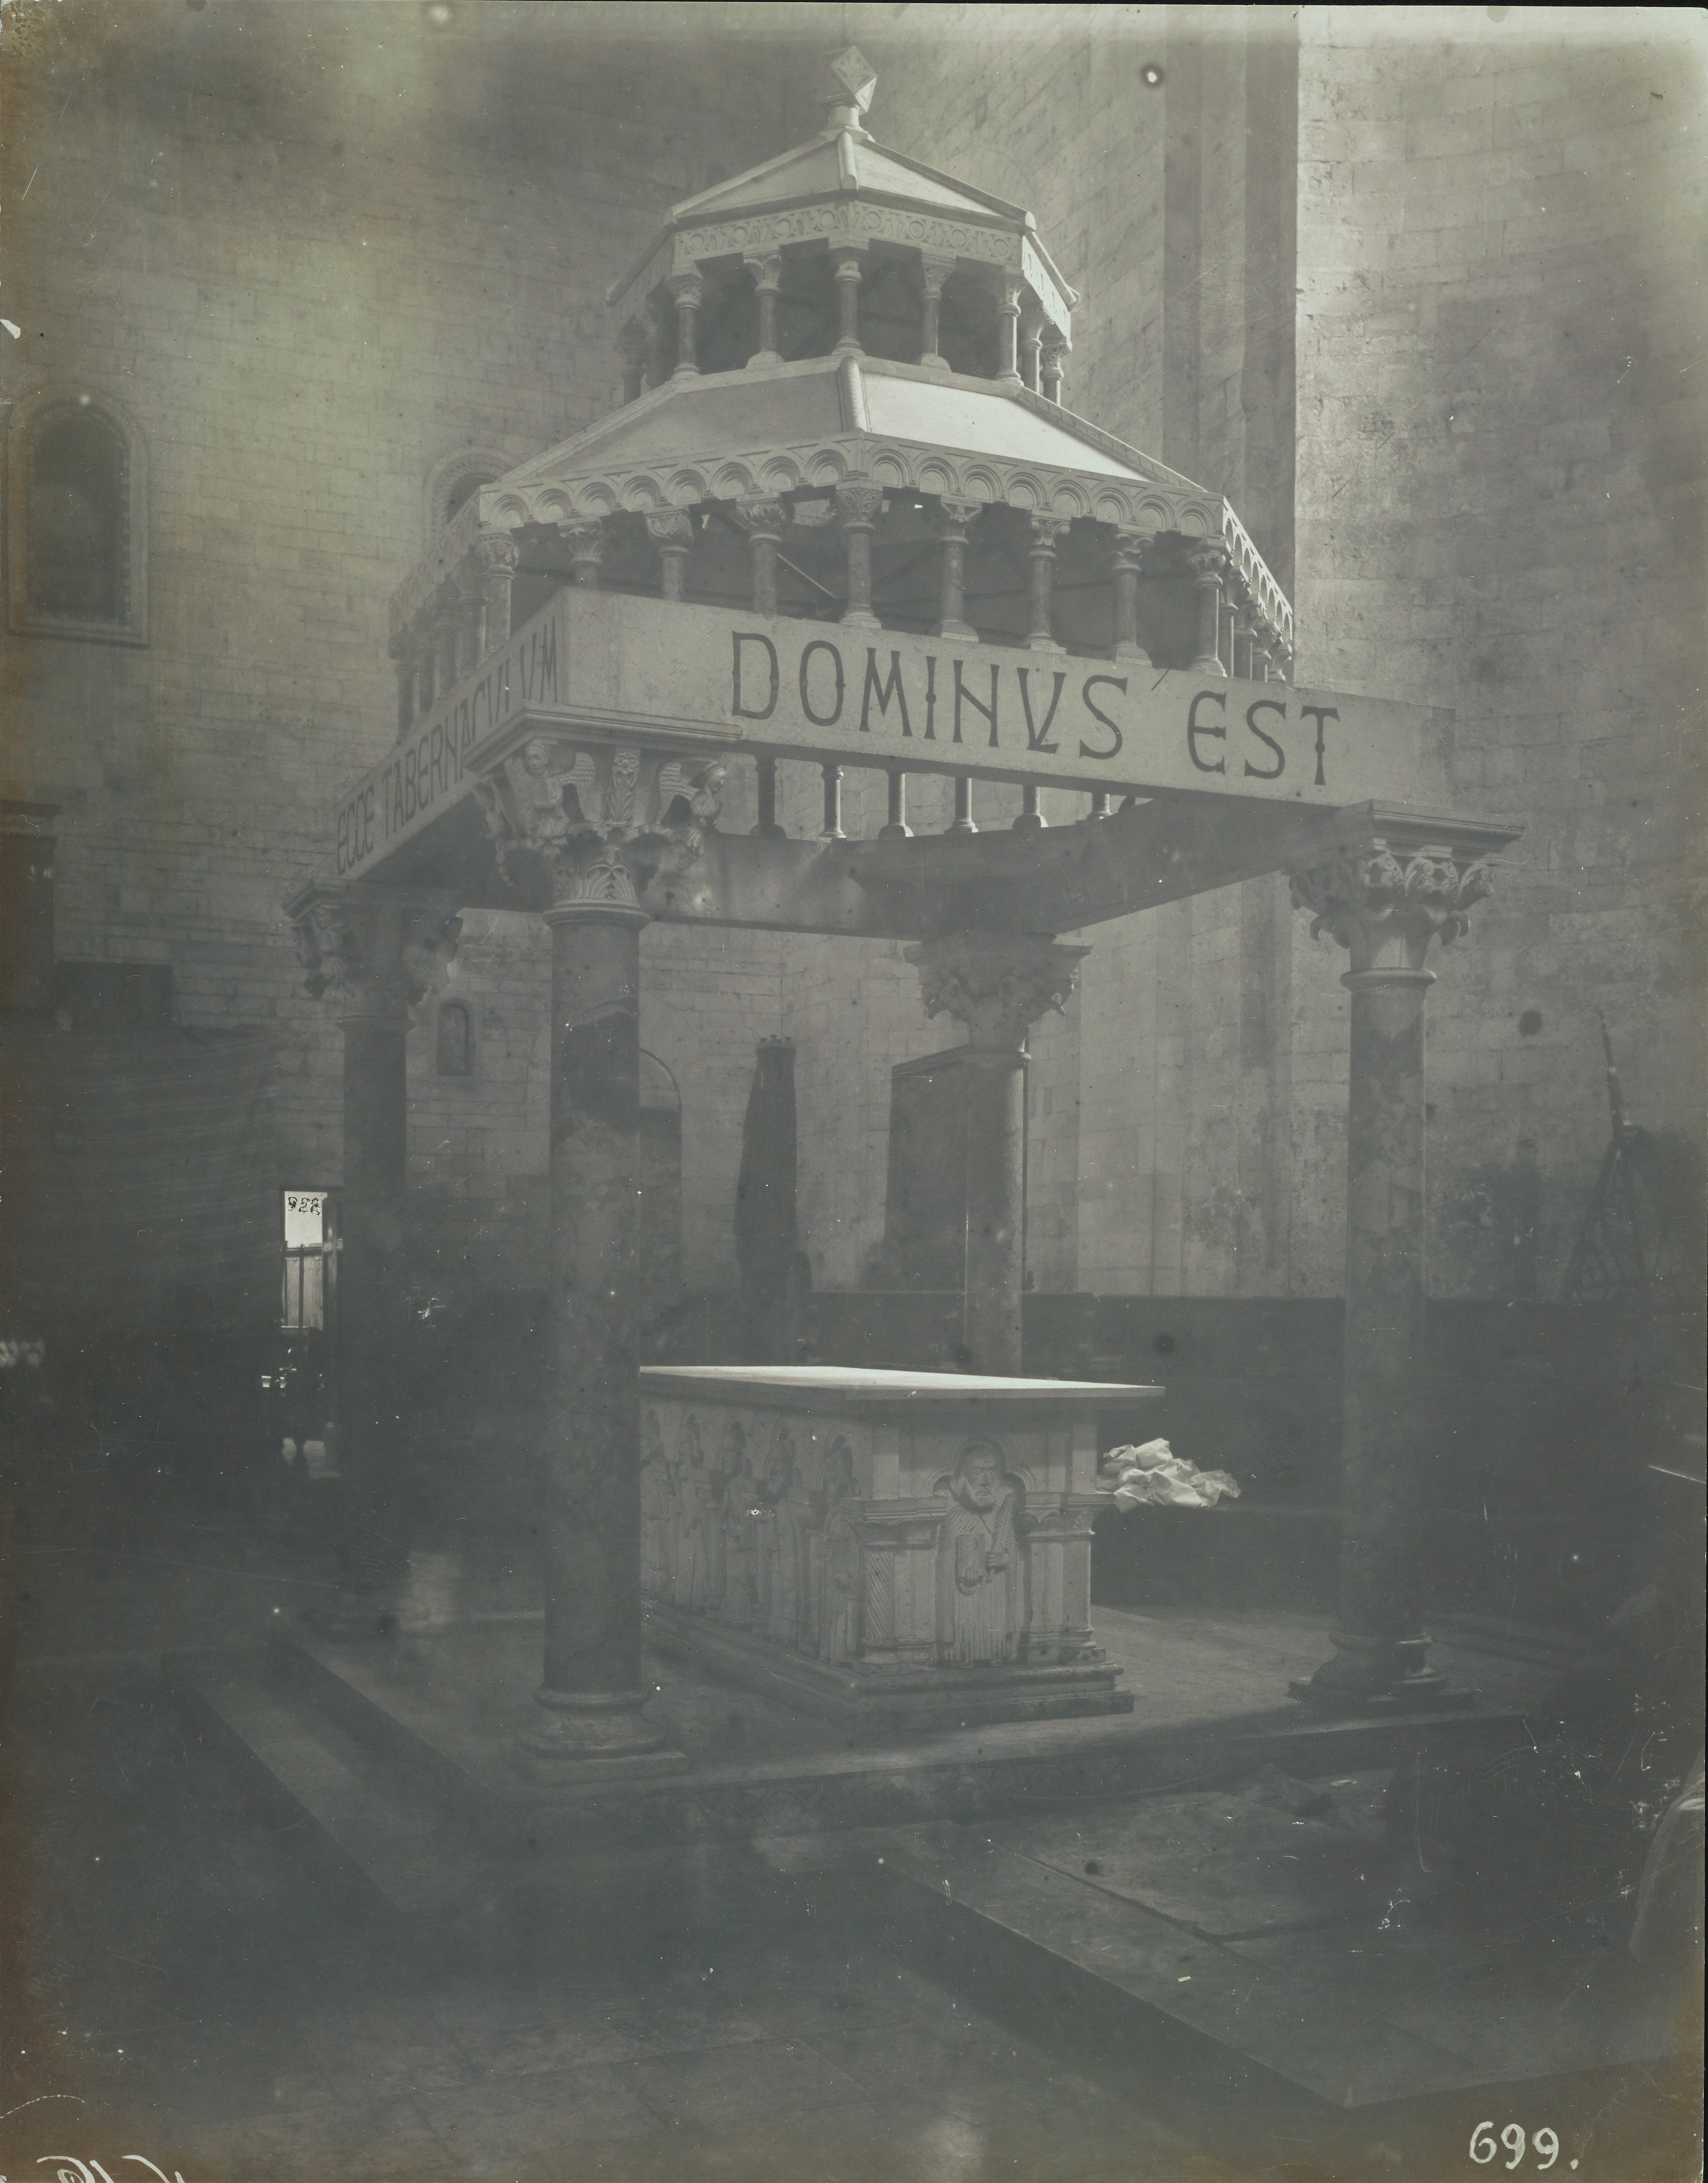 Fotografo non identificato, Ruvo di Puglia - Cattedrale S. Maria Assunta, ambone, 1926-1950, gelatina ai sali d'argento/carta, MPI6091671